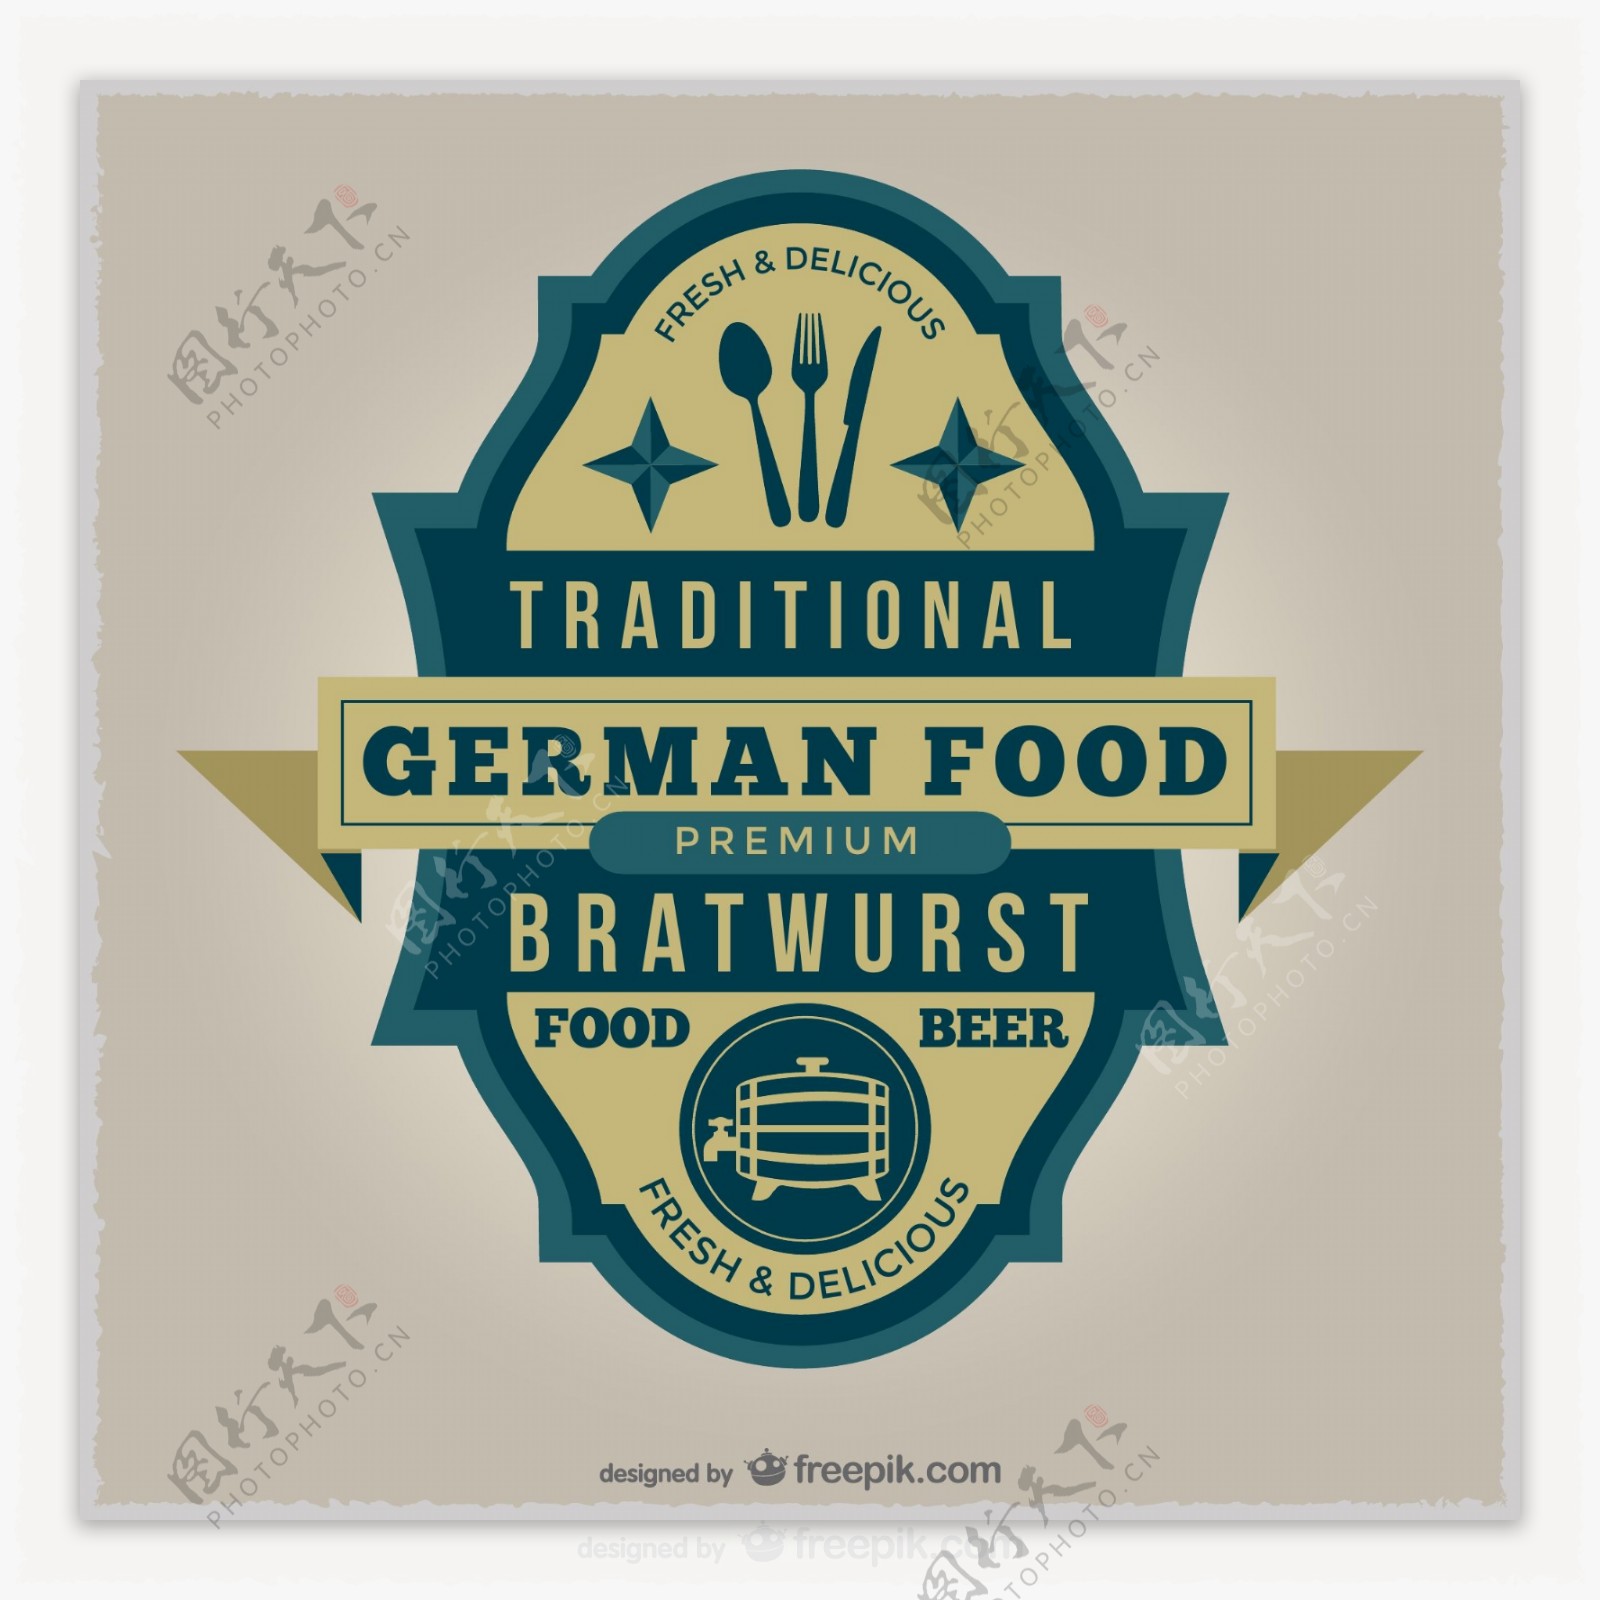 德国食品徽章